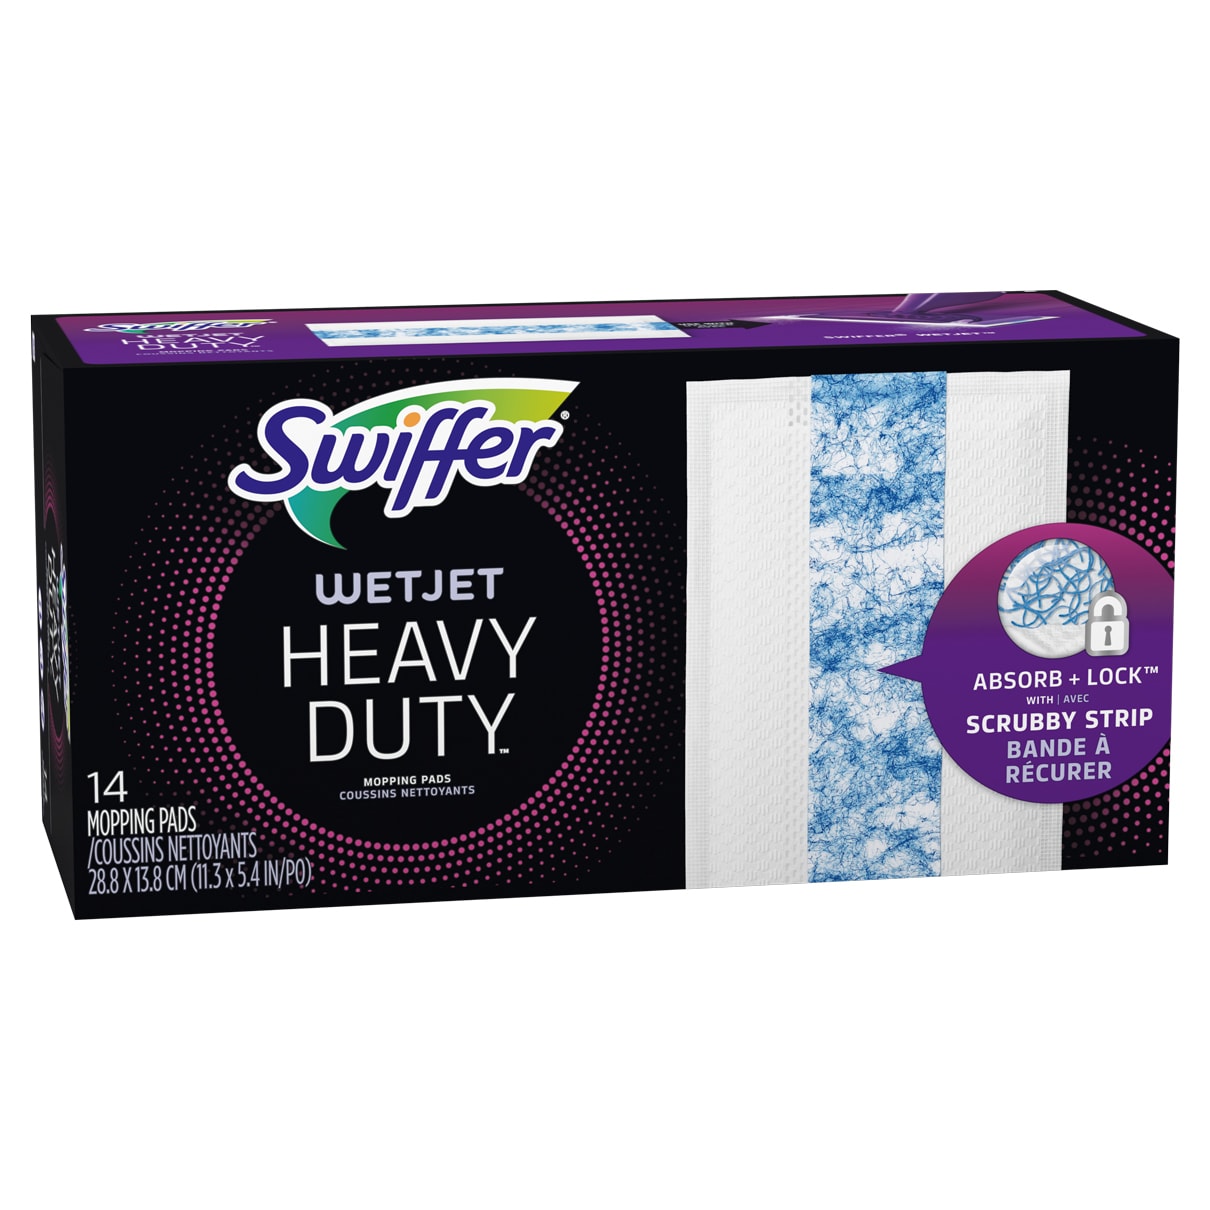 Swiffer Sweeper Heavy Duty Wet Wood Microfiber Refill (20-Pack) in